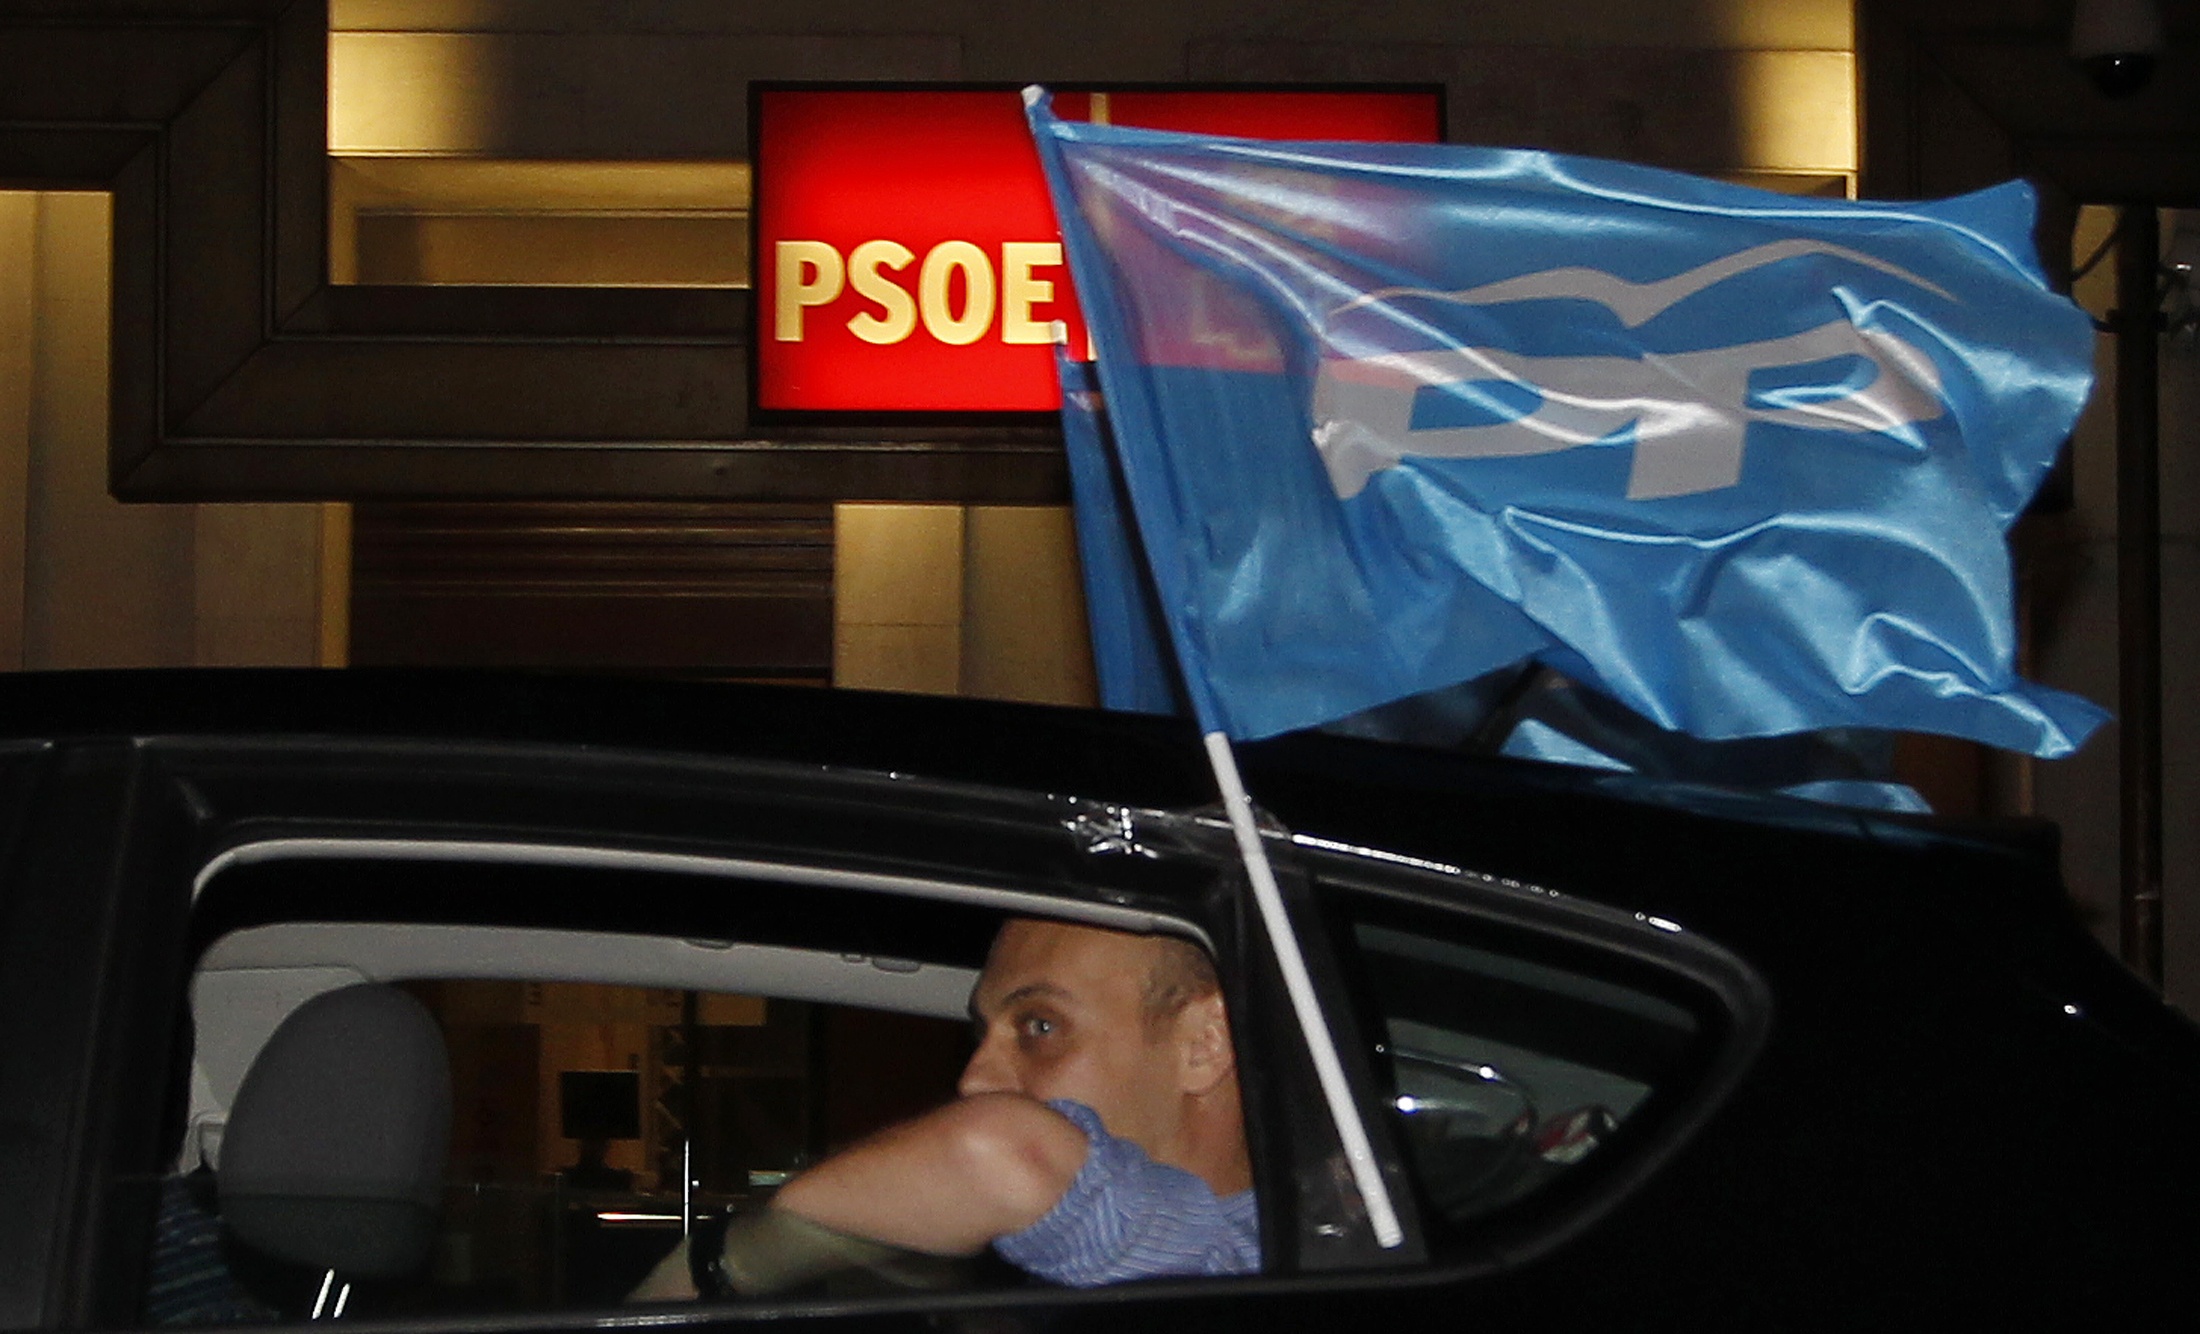 Ηττα των Σοσιαλιστών στις περιφερειακές εκλογές στην Ισπανία